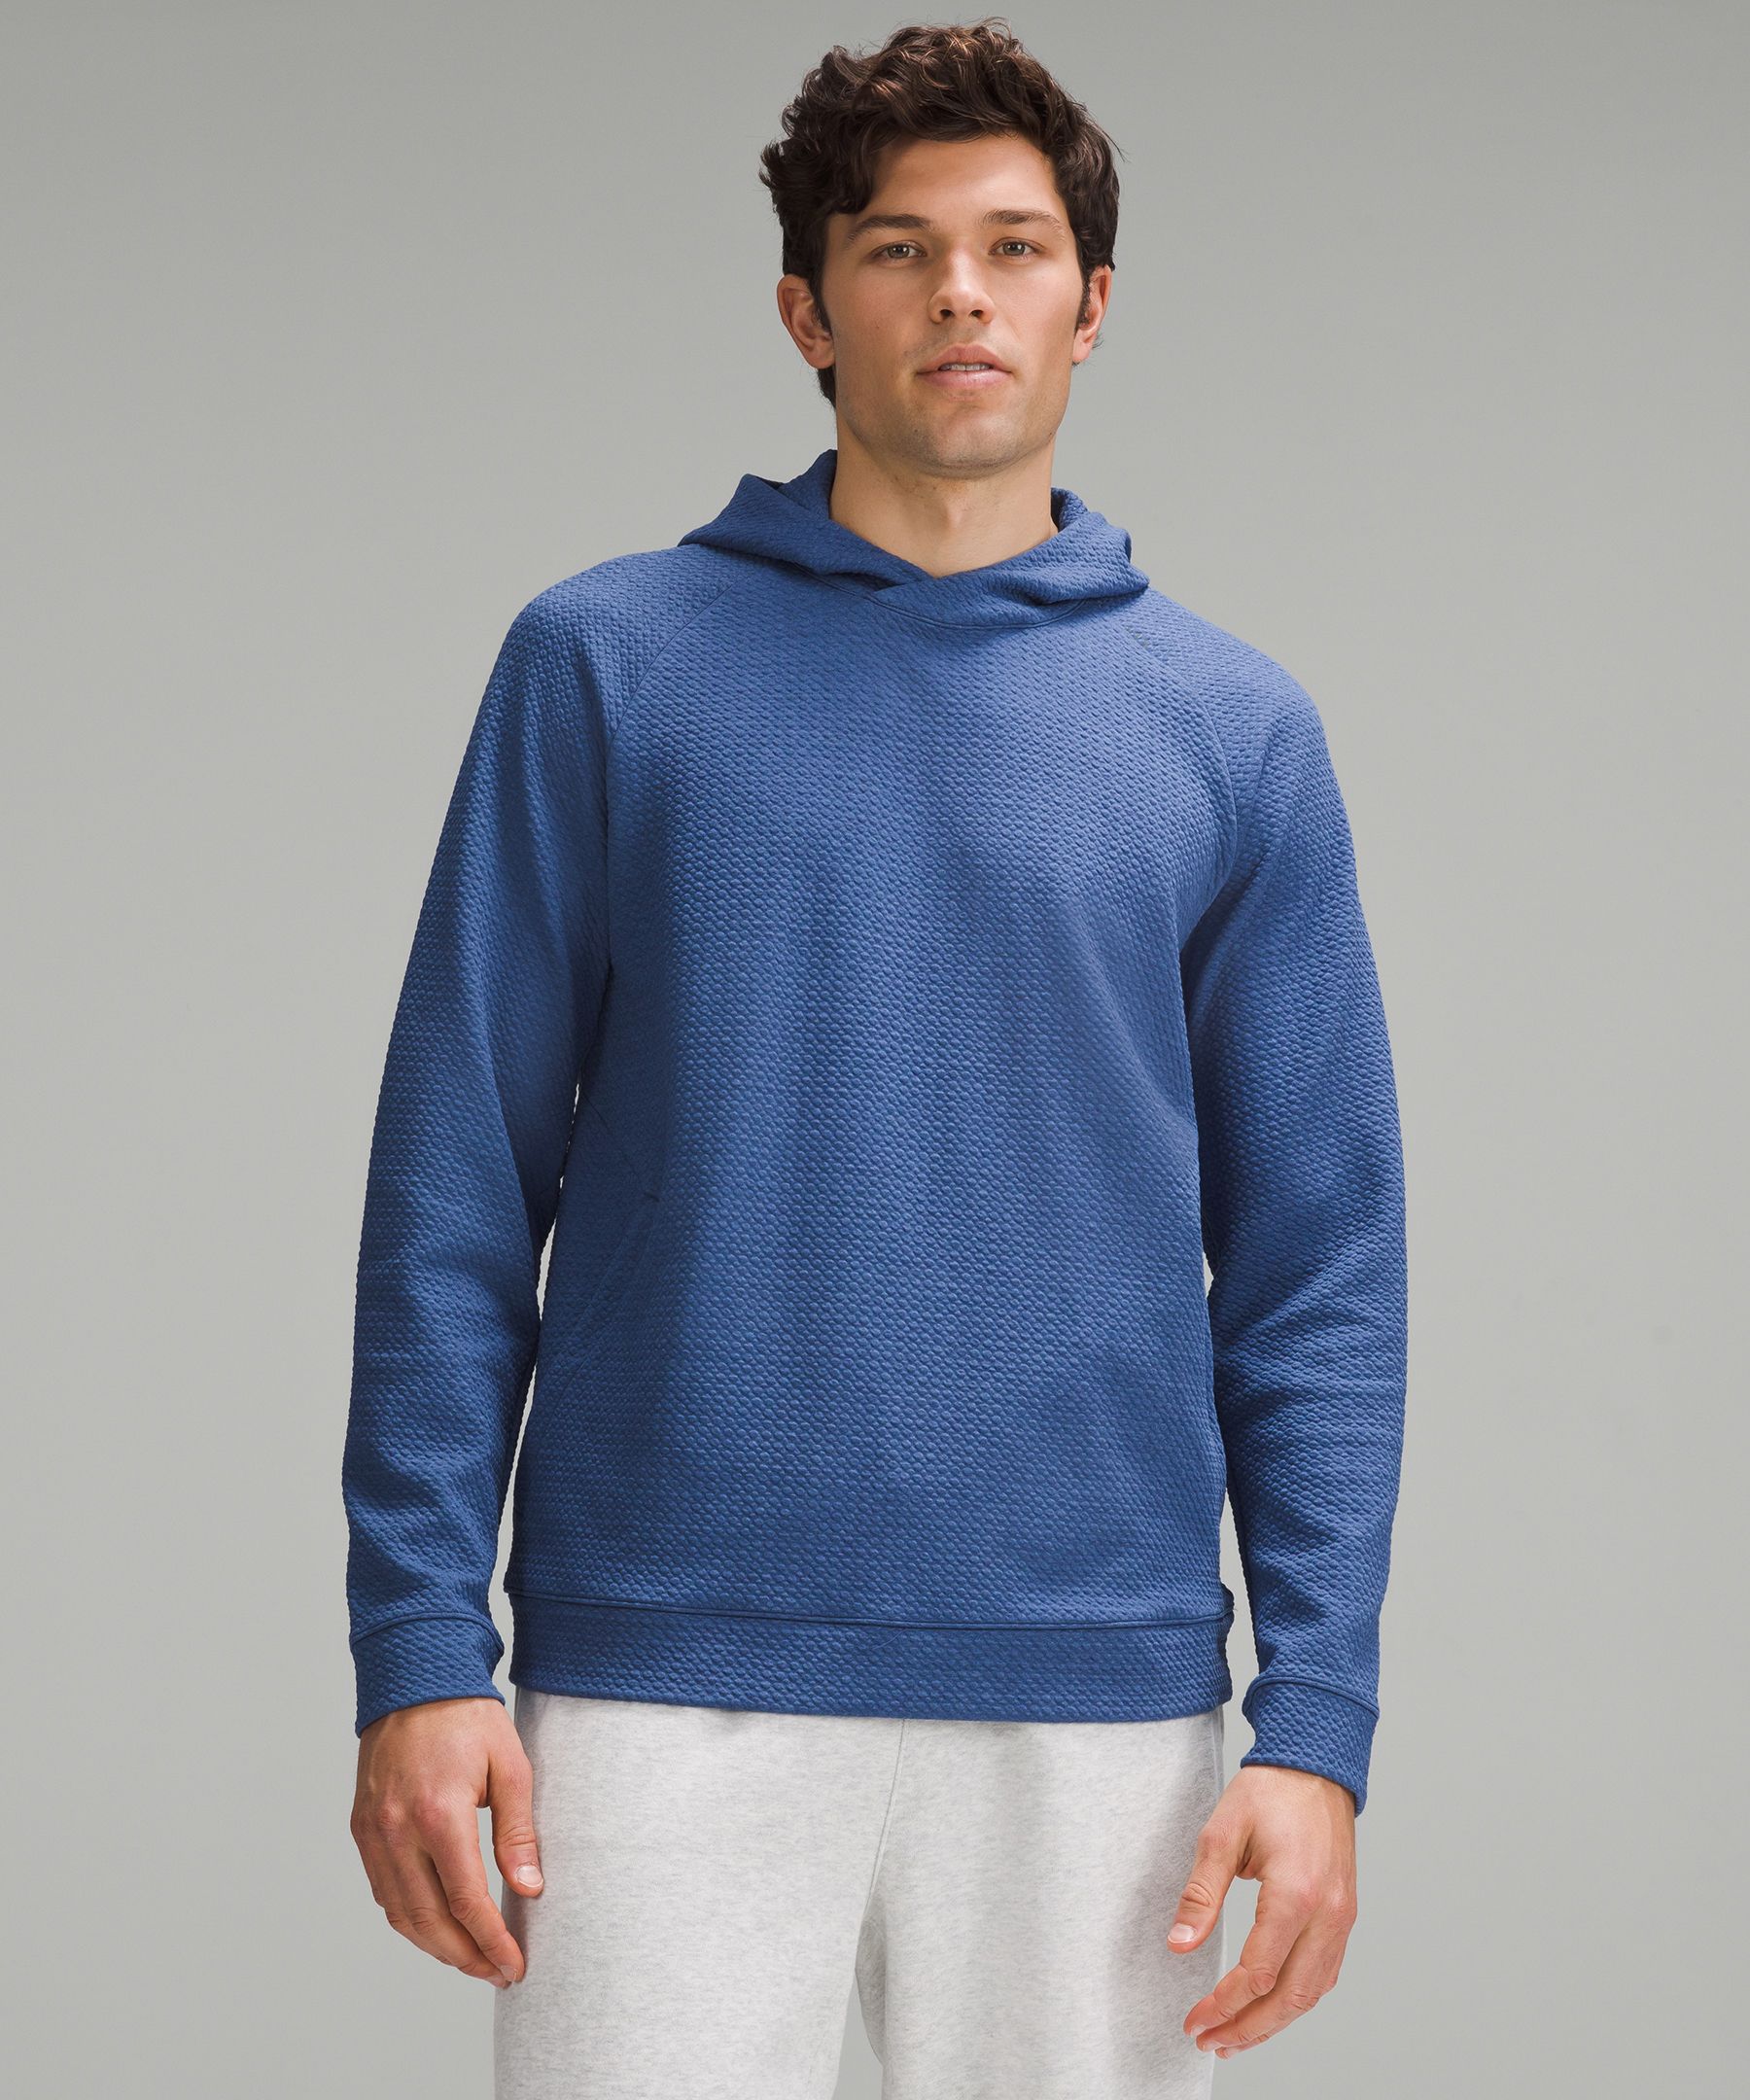 lululemon athletica Blue Hooded Sweaters